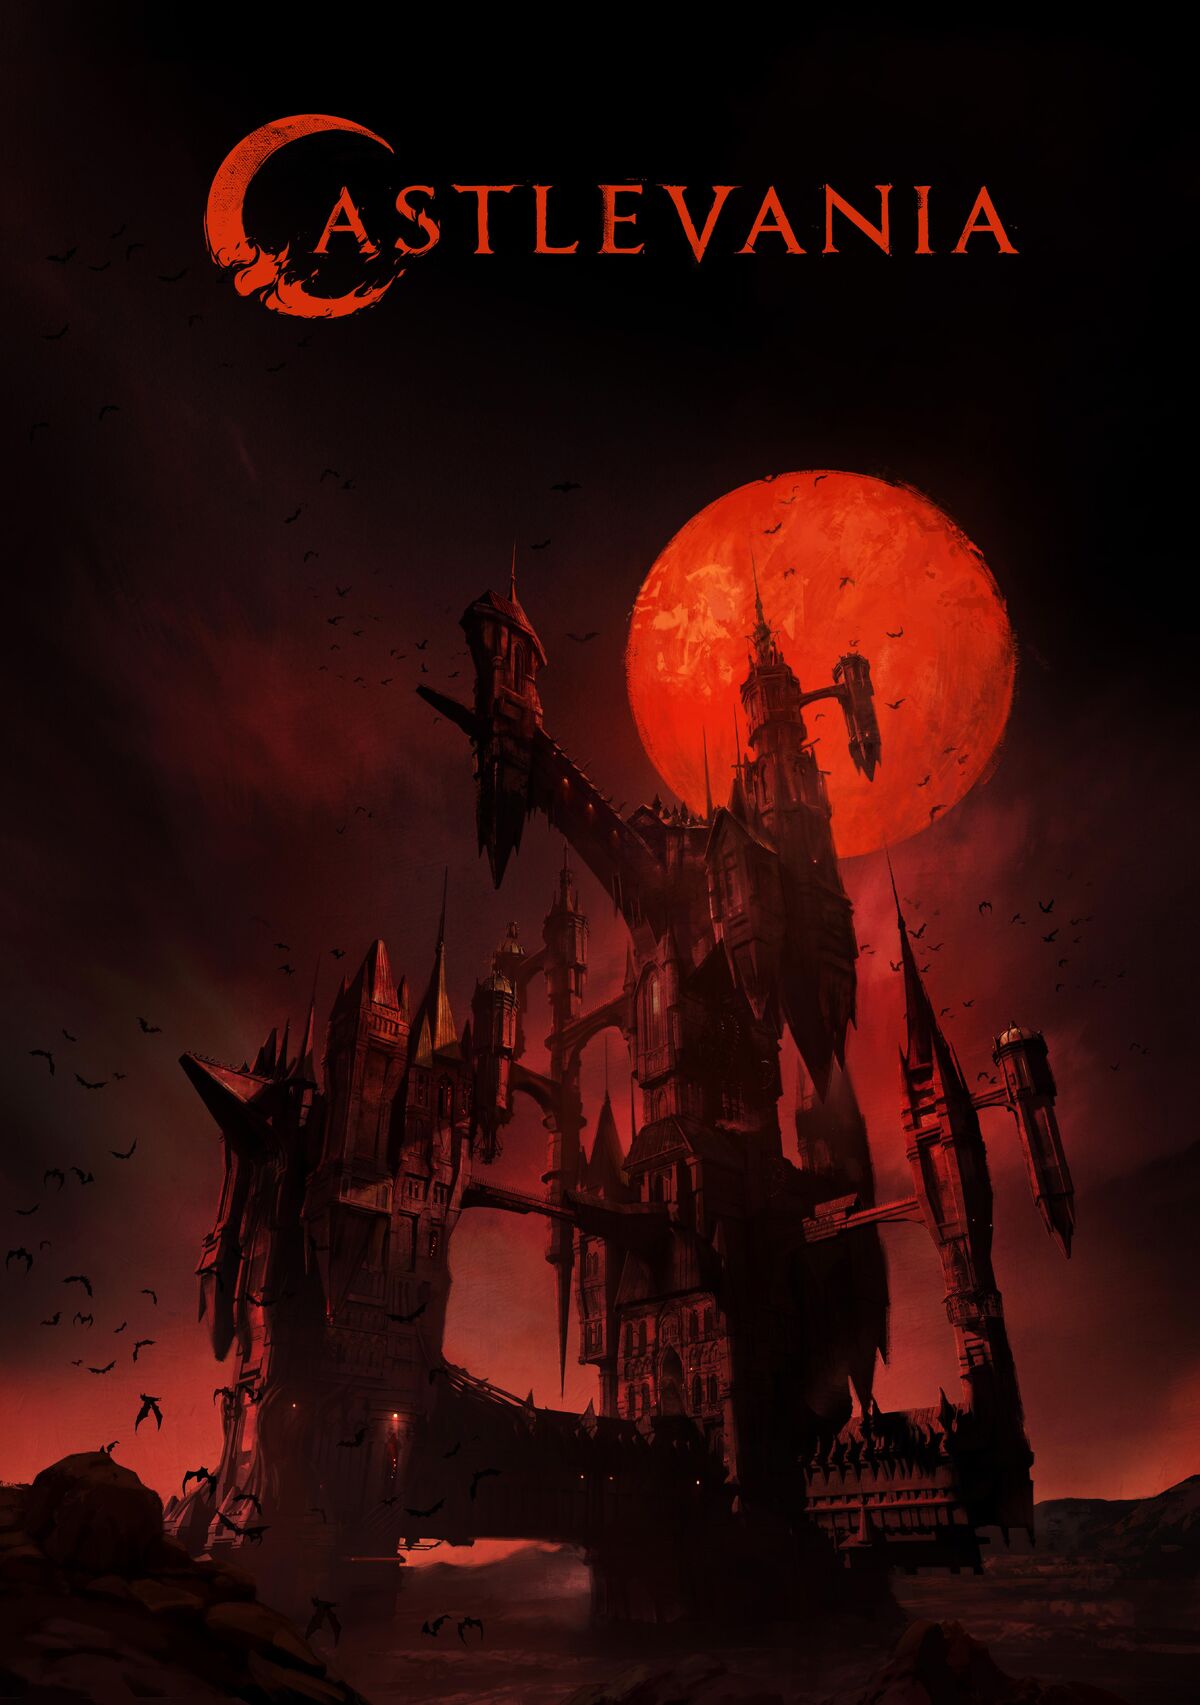 Vampire Hunter D: Resurrection (TV Series) - IMDb